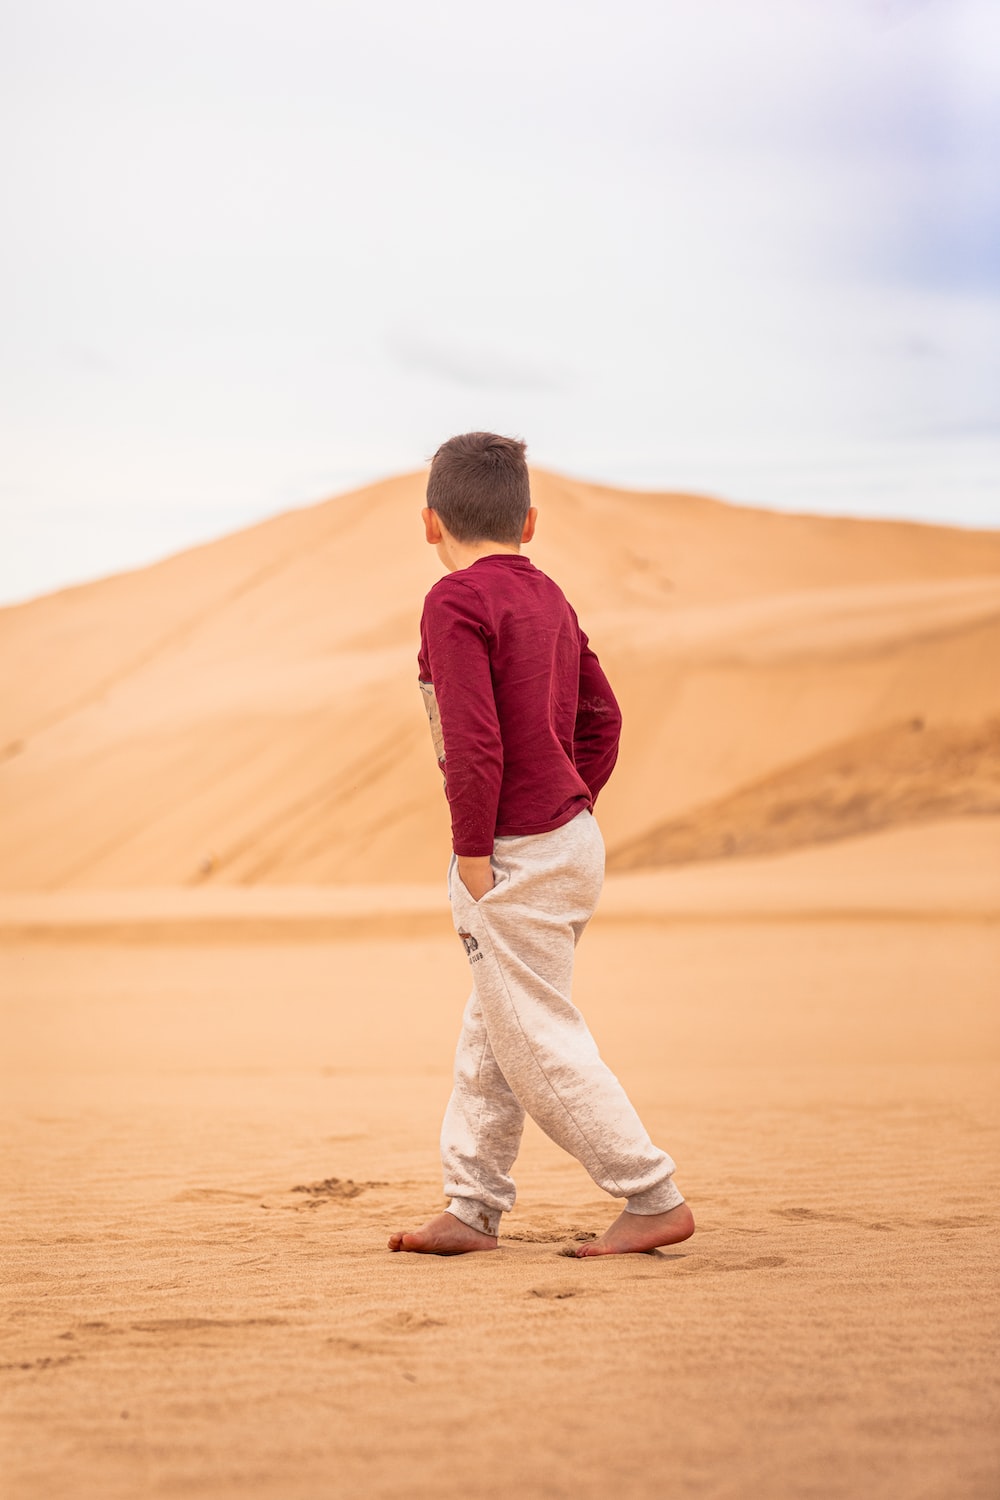 a young boy walking across a sandy field